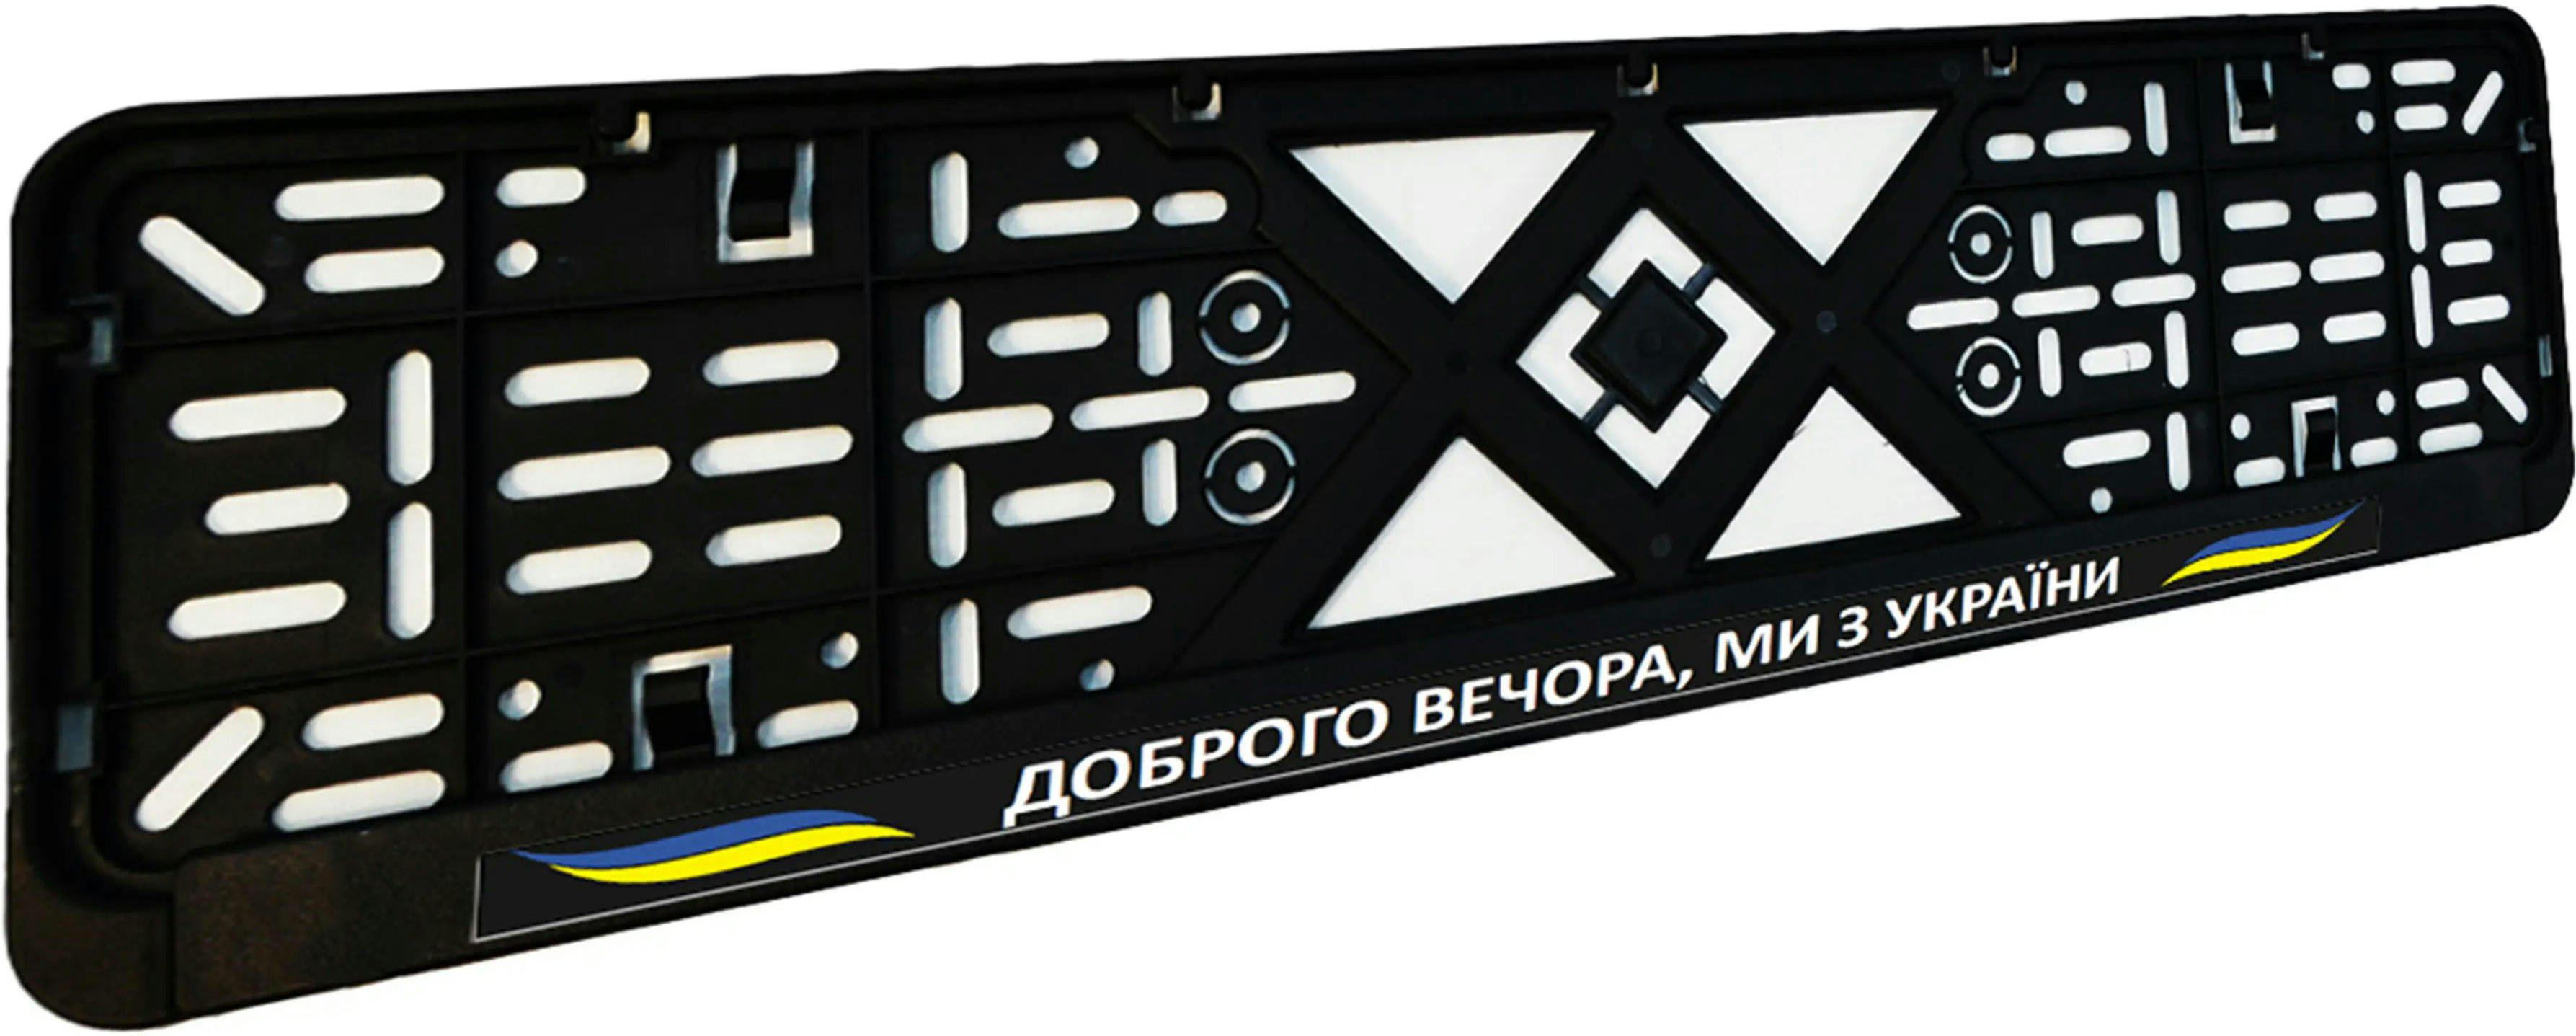 Рамка номерного знака Poputchik пластиковая патриотическая Доброго вечора, ми з України (24-268-IS) фото 3